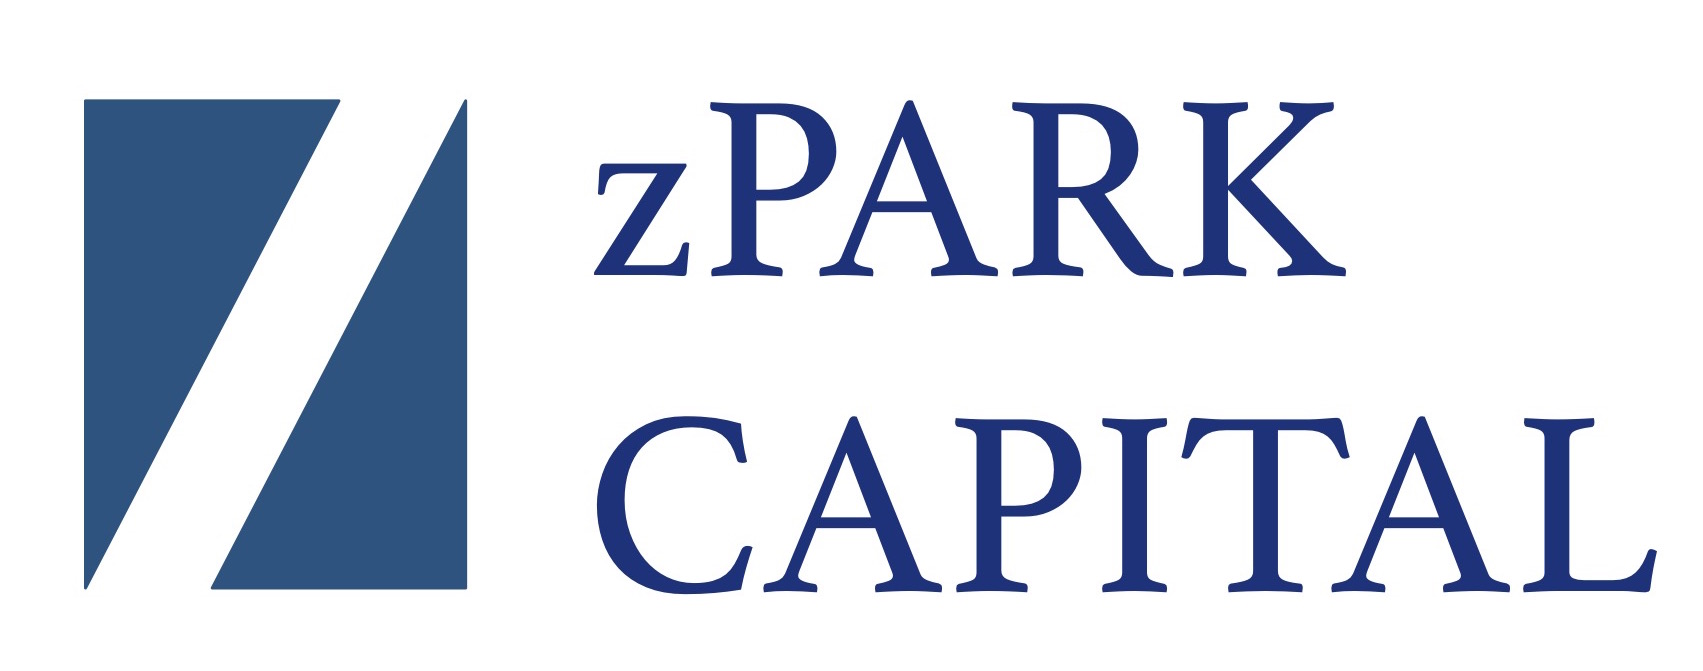 zpark logo.jpg